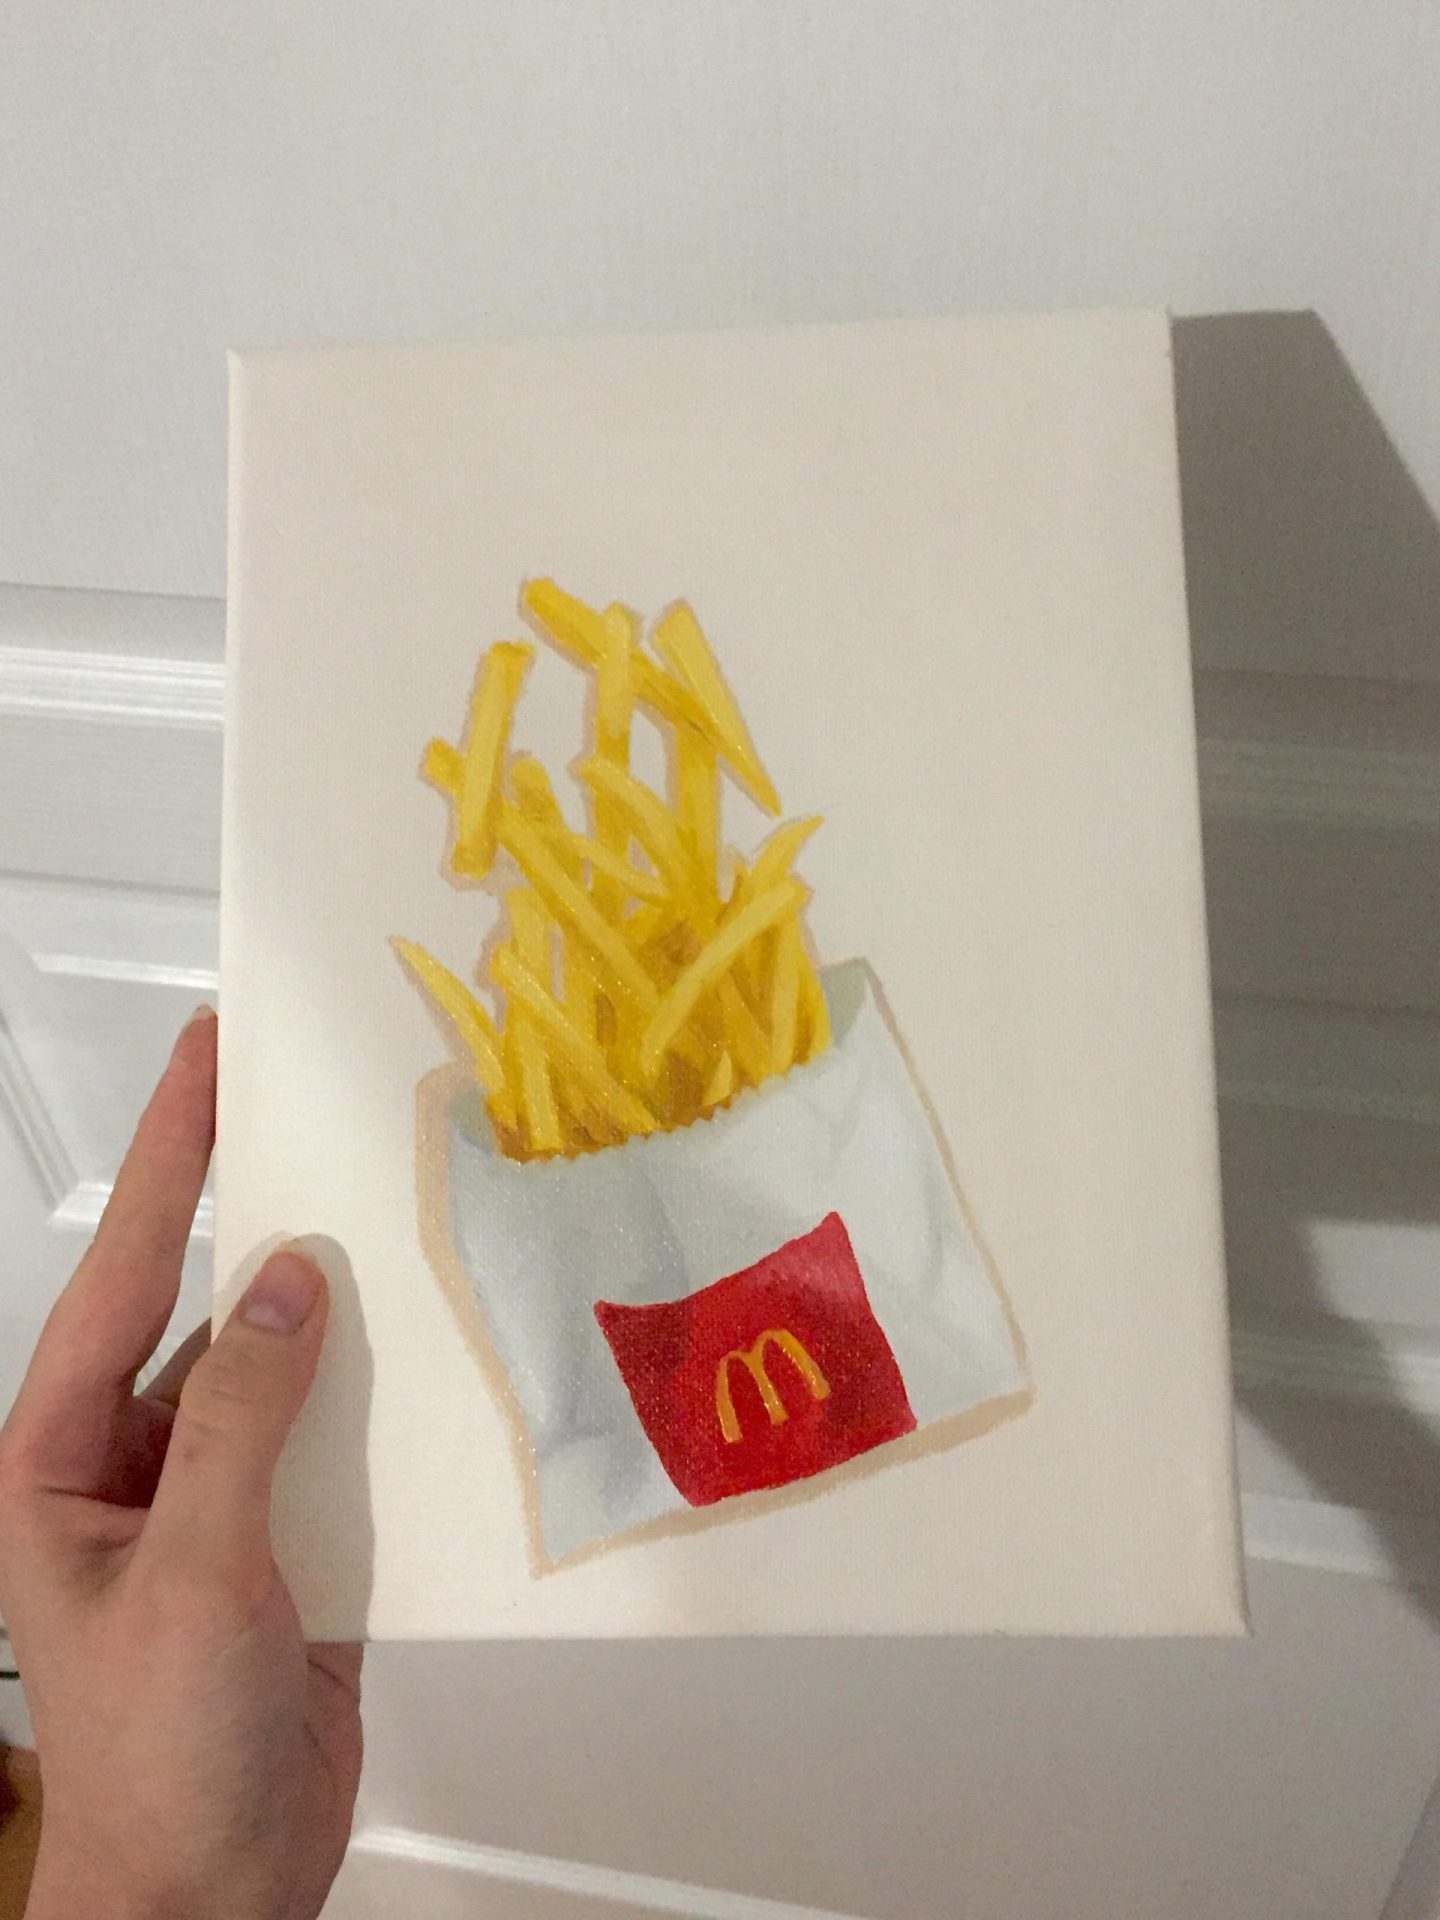 Tableau peinture à l'huile de frites McDonalds